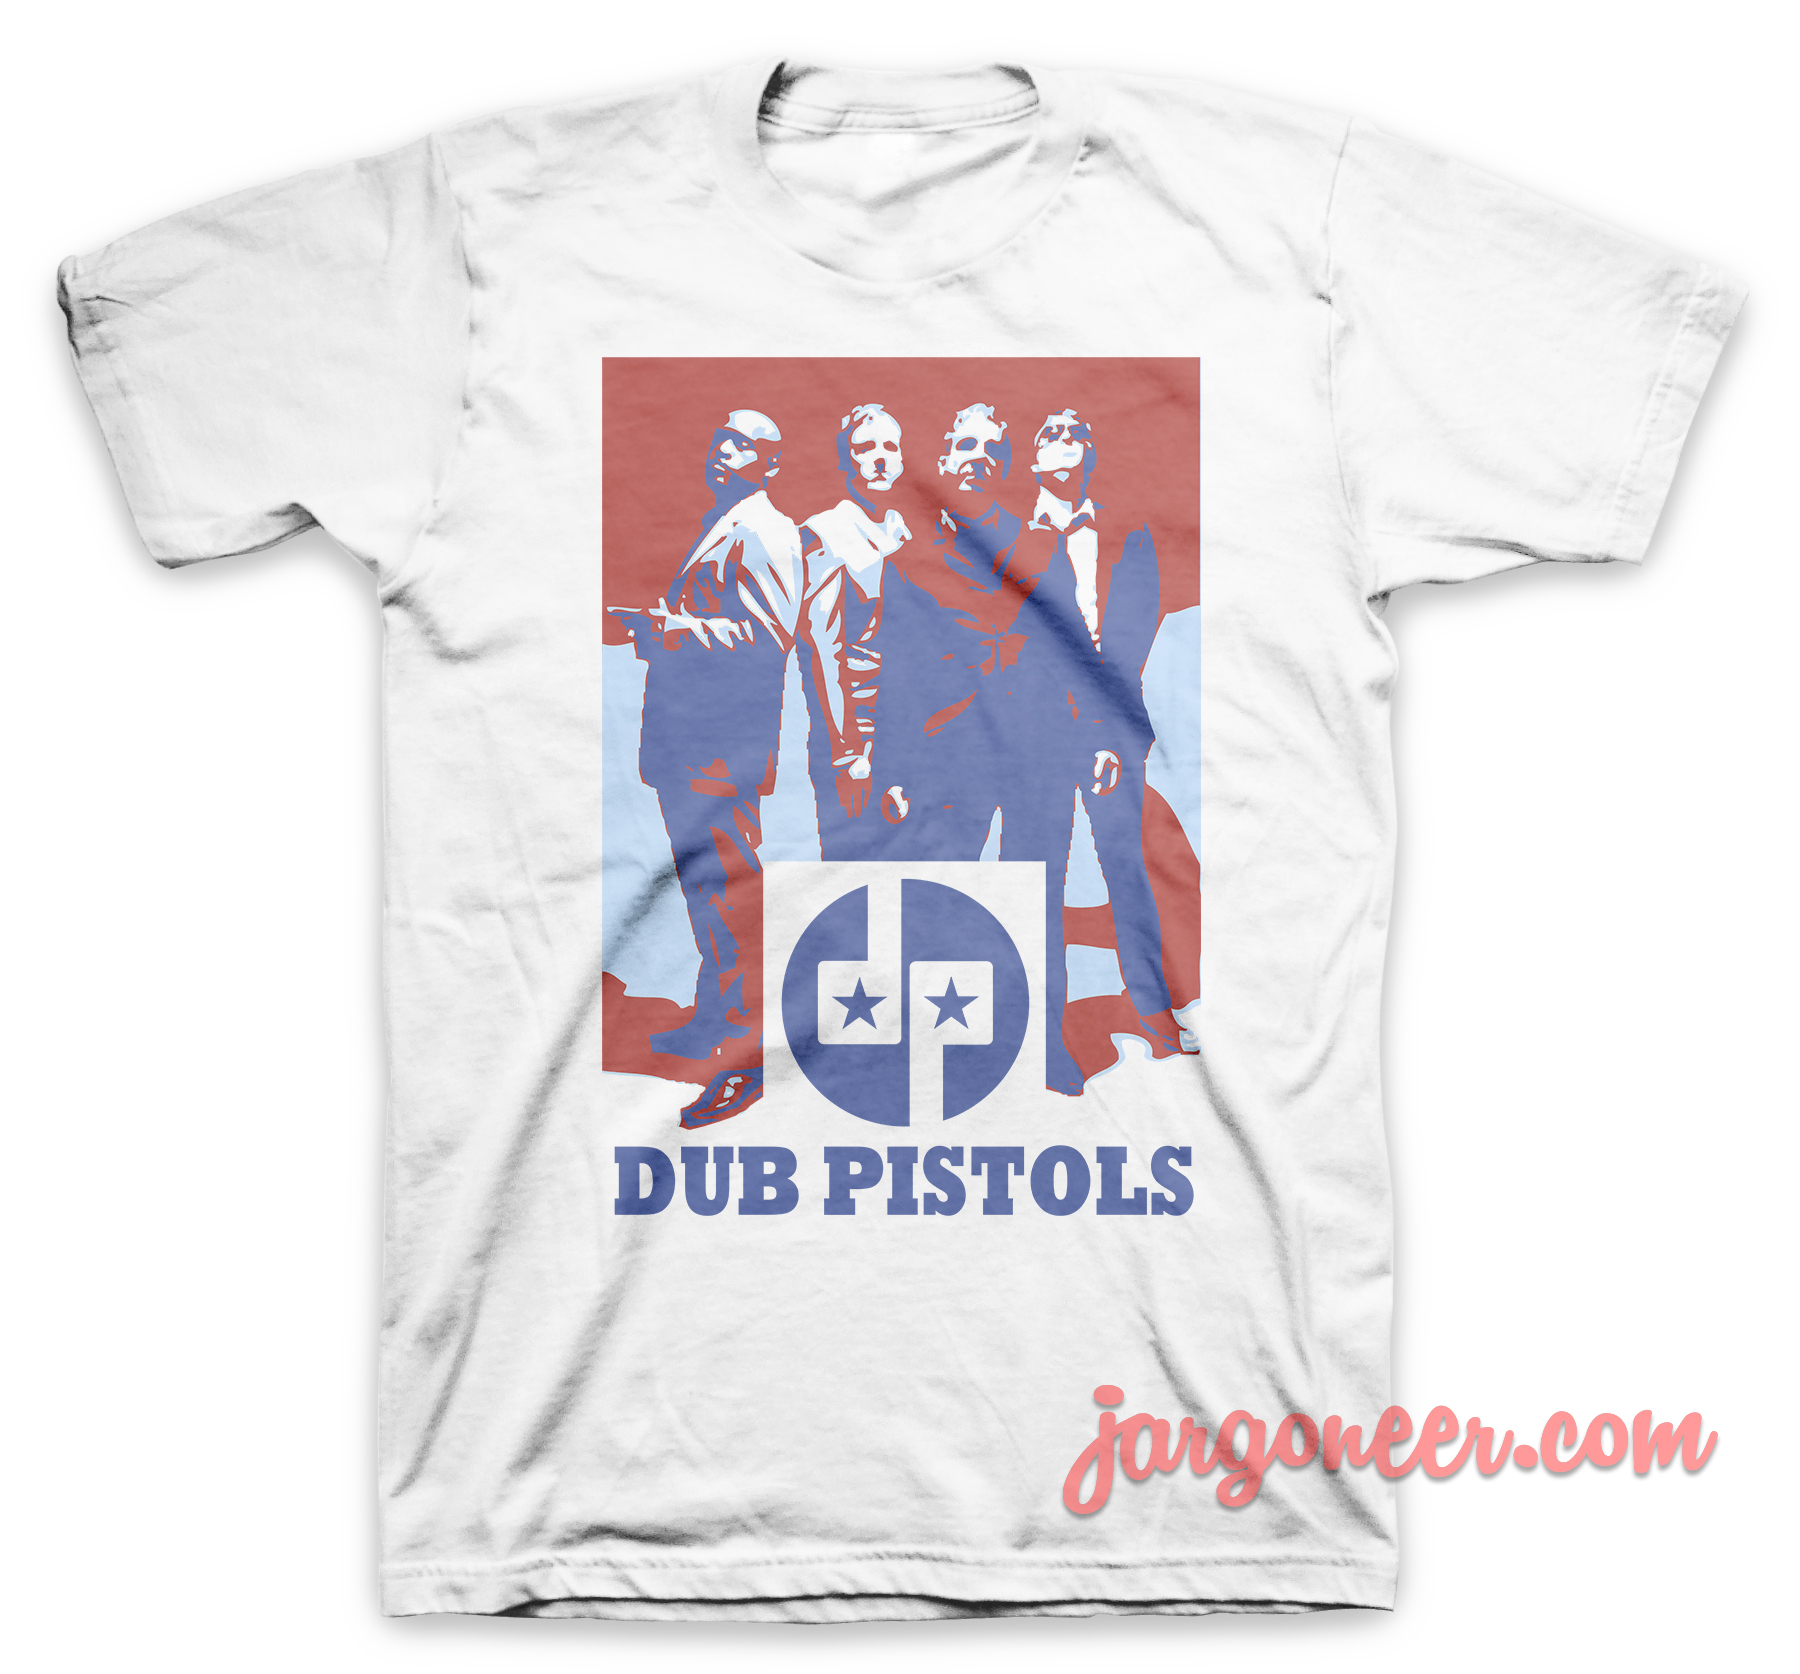 Dub Pistols White T Shirt - Shop Unique Graphic Cool Shirt Designs